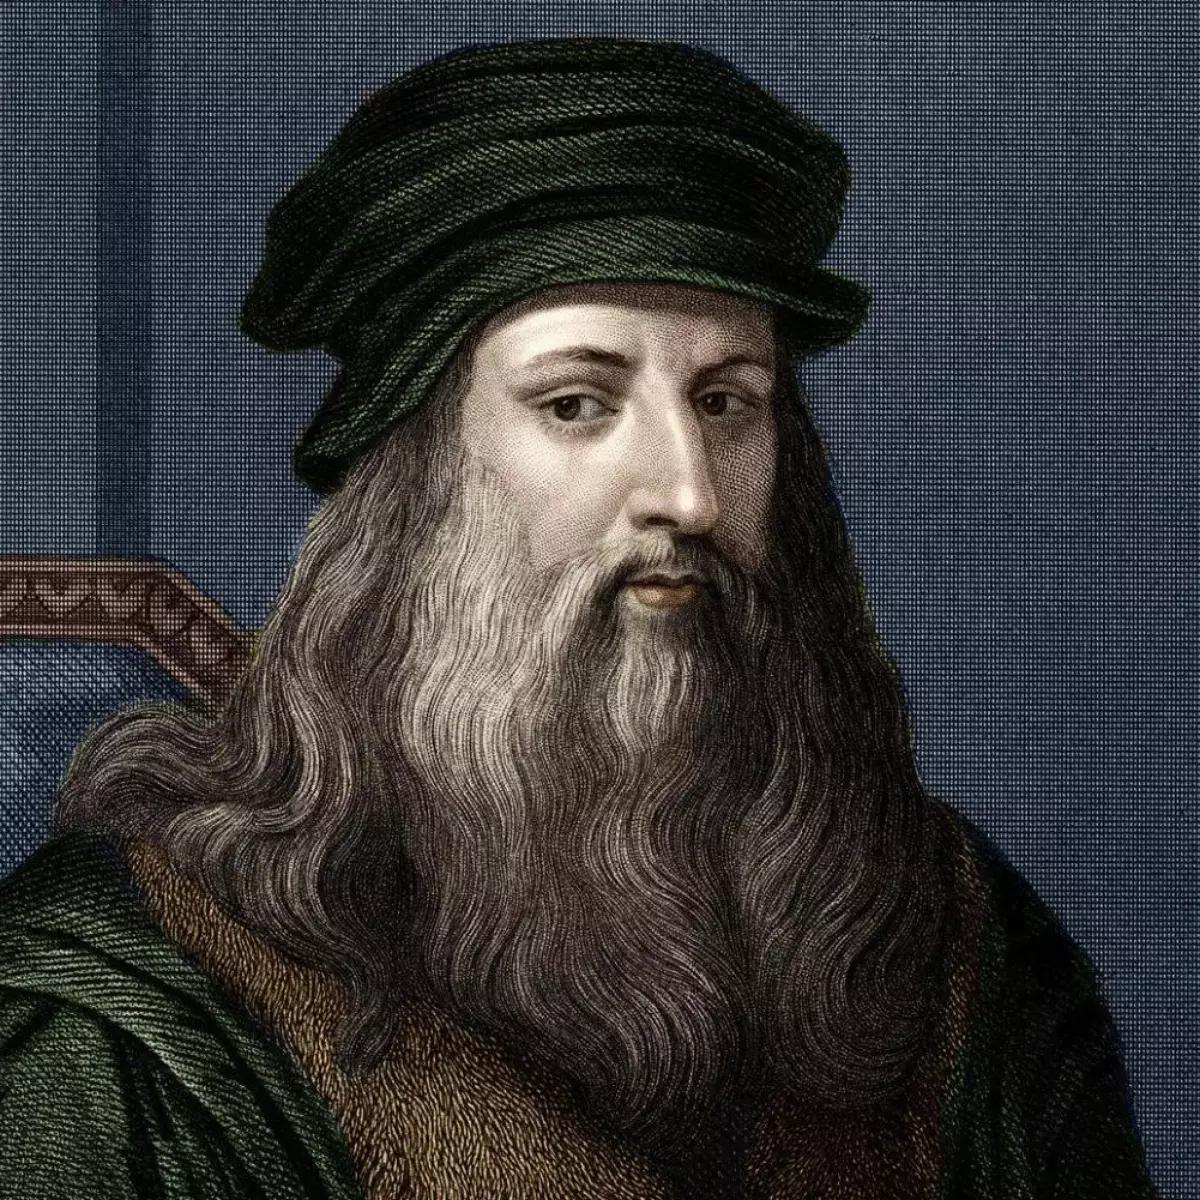 tipo de inteligencia de leonardo da vinci - Qué tan inteligente era Leonardo da Vinci